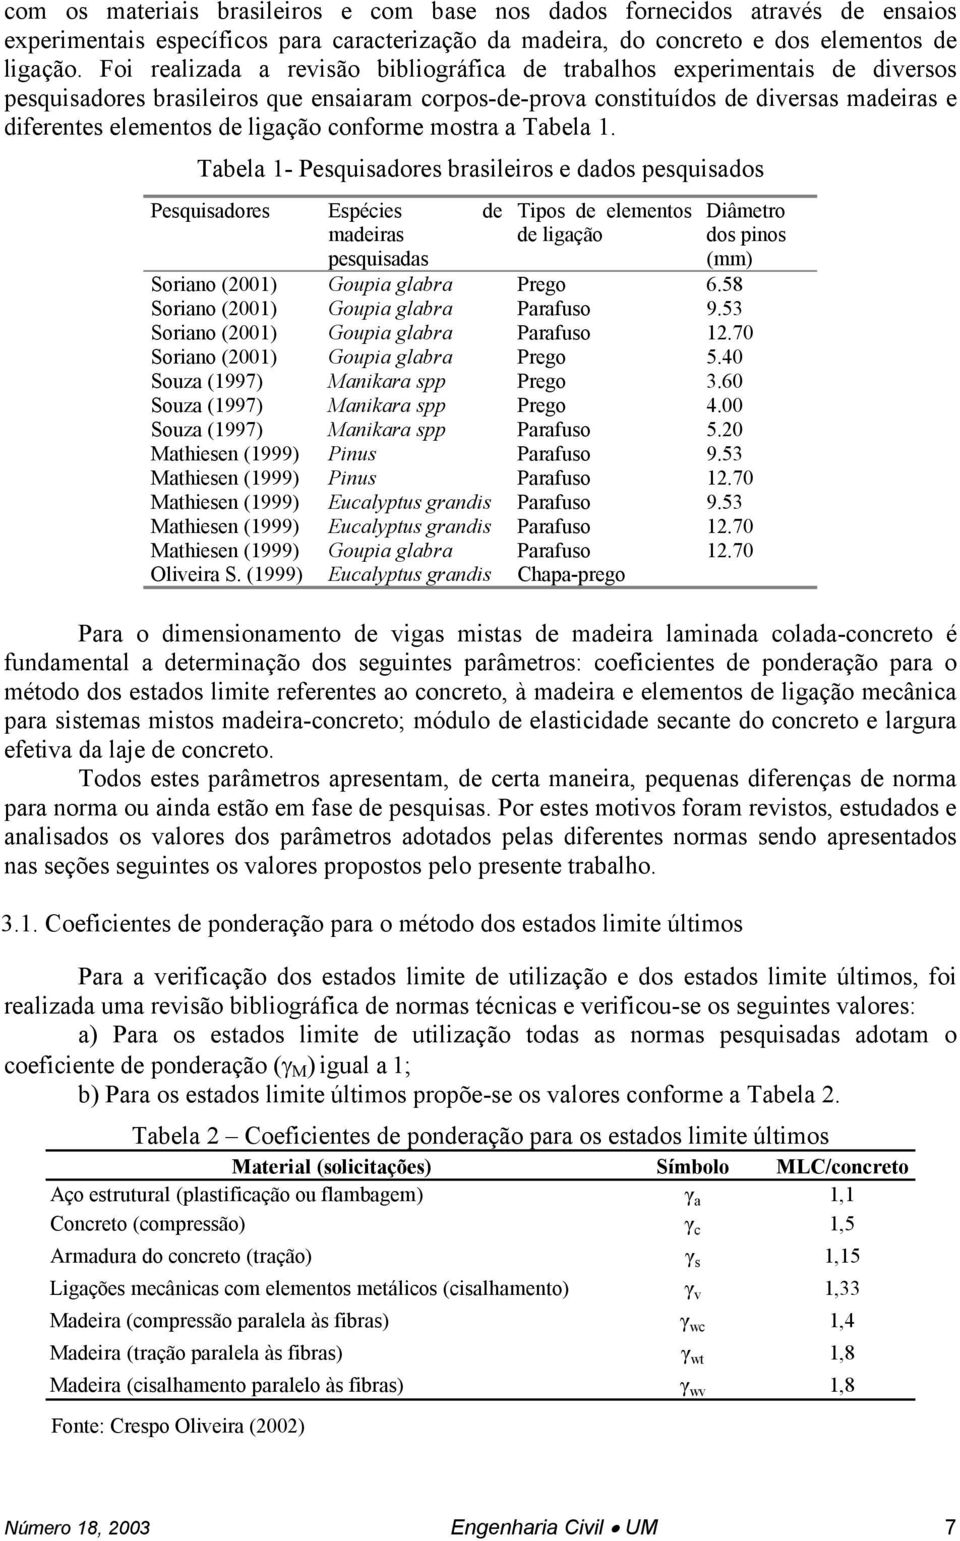 ligação conforme mostra a Tabela 1. Tabela 1- Pesquisadores brasileiros e dados pesquisados Pesquisadores Espécies de madeiras pesquisadas Souza (1997) Souza (1997) Souza (1997) Oliveira S.